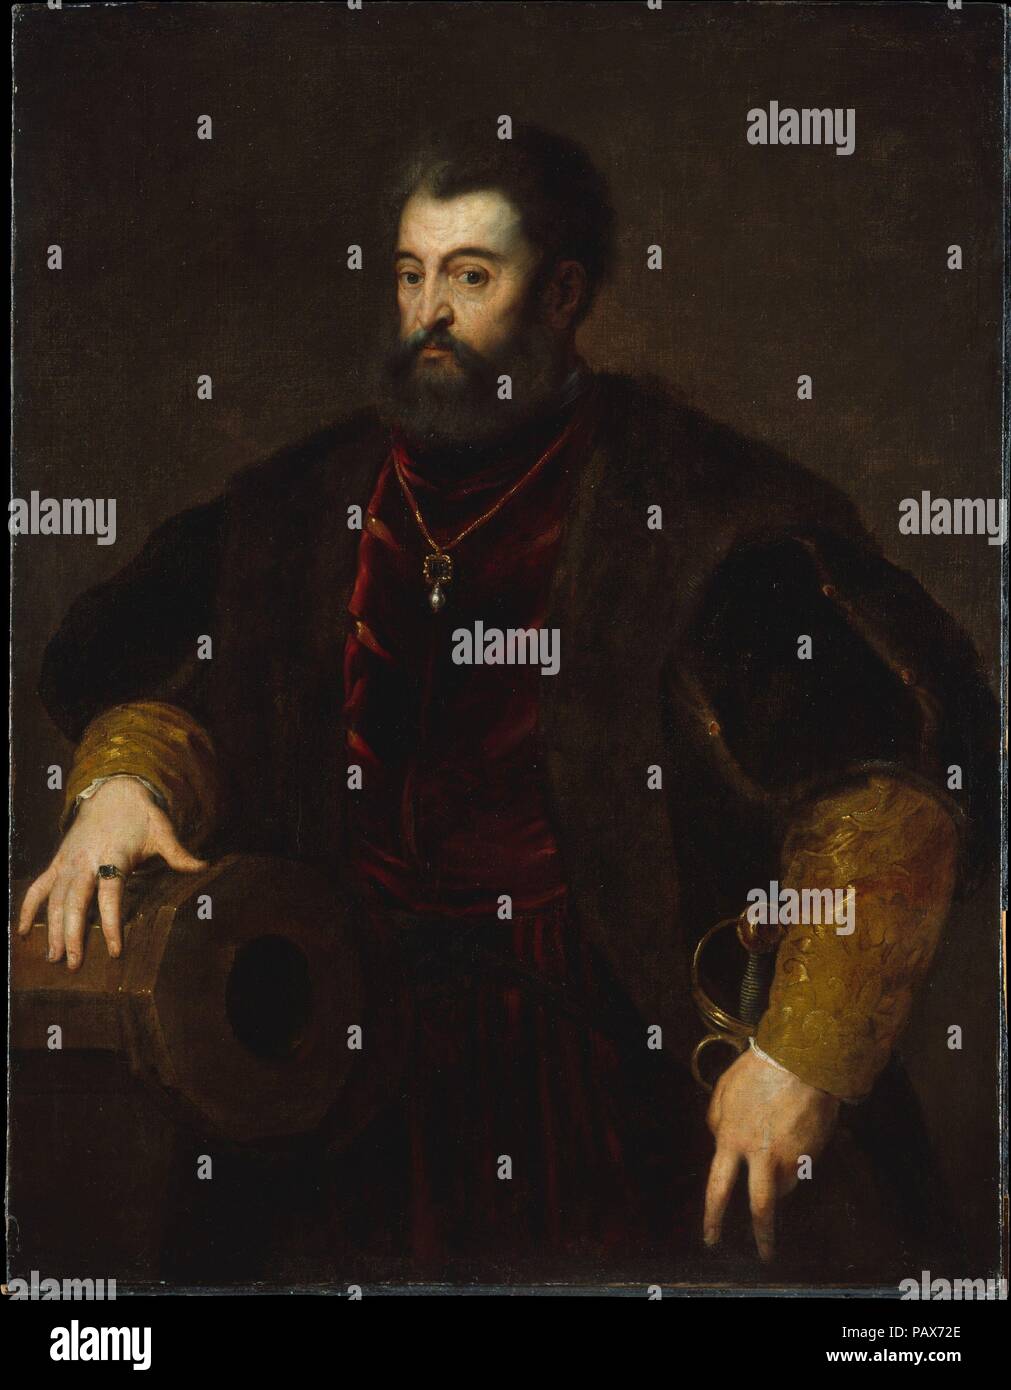 Alfonso d'Este (1486-1534), Herzog von Ferrara. Artist: Kopie nach Tizian (Ende 16 oder Anfang 17. Jahrhundert). Abmessungen: 50 x 38 cm. (127 x 98,4 cm). Museum: Metropolitan Museum of Art, New York, USA. Stockfoto